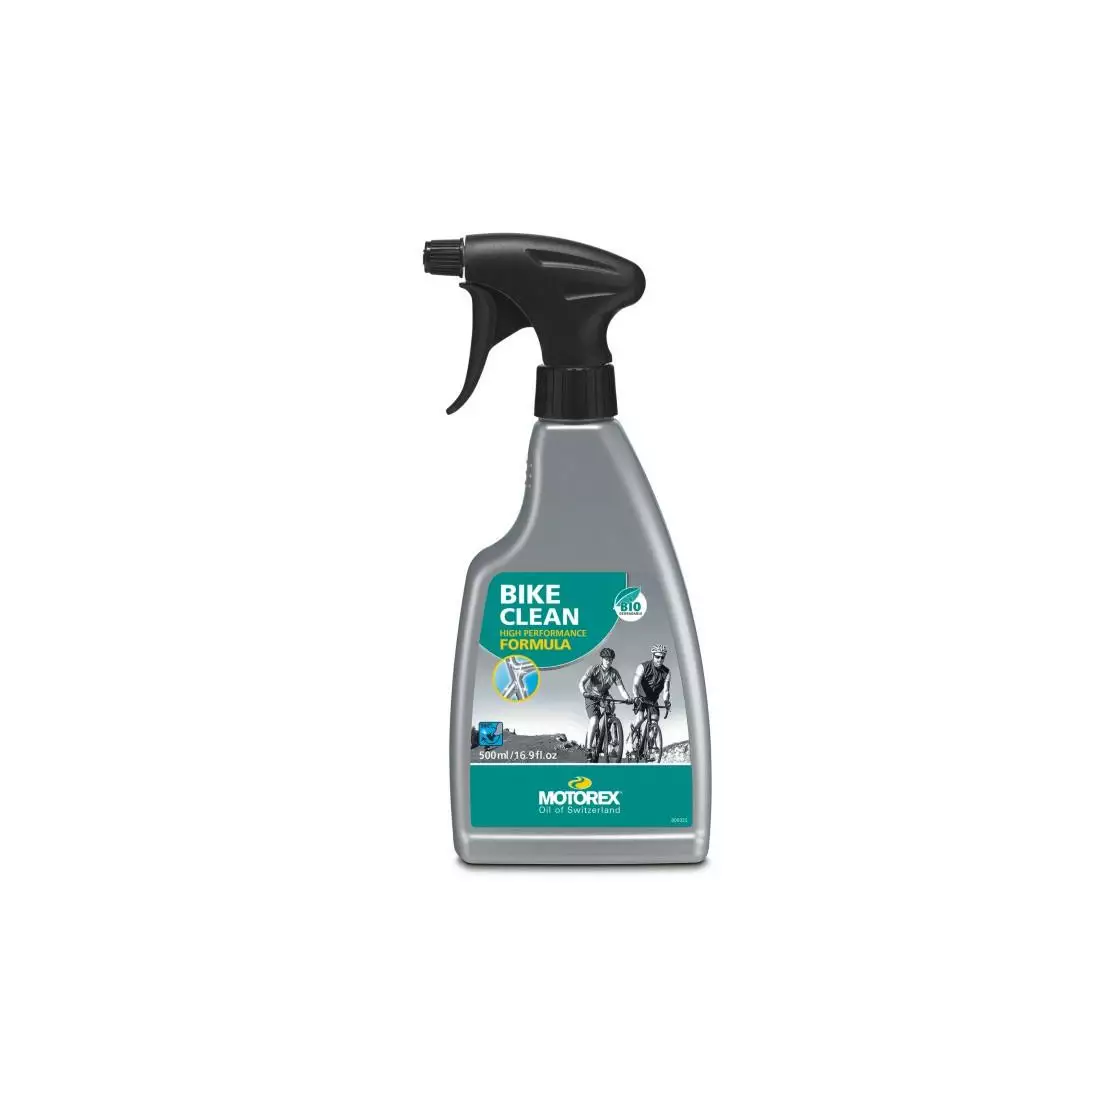 MOTOREX BIKE CLEAN pregătire pentru curățarea tuturor tipurilor de murdărie, atomizor 500 ml